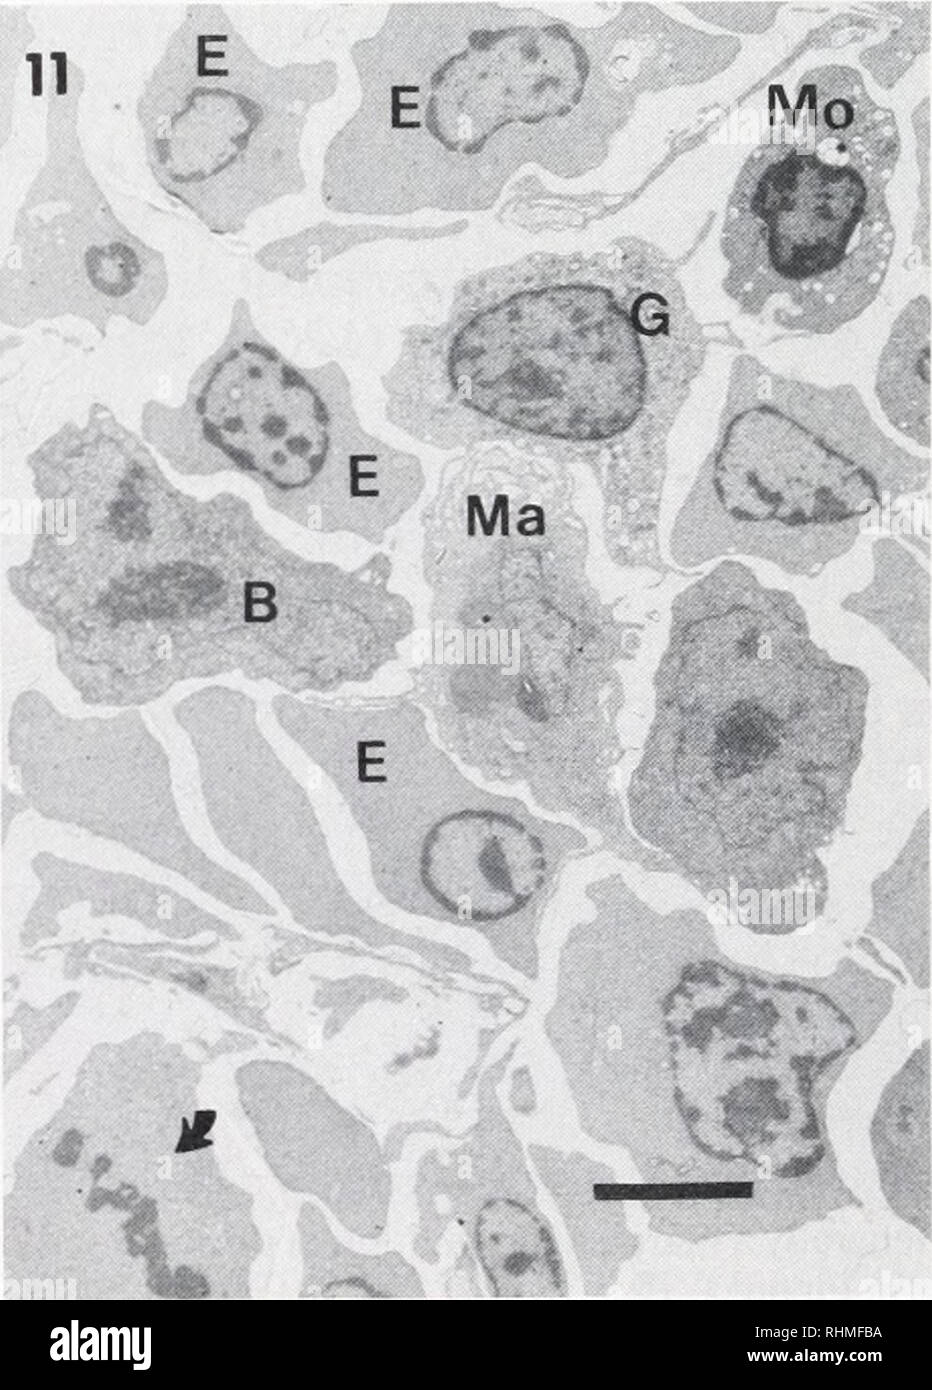 . Il bollettino biologico. Biologia; Zoologia; biologia; biologia marina. 9a. Cellula plasmatica dall'organo orbitale. Nucleo (N) con una marcata nucleolus (n) e scat- cromatina. Qloplasm con la caratteristica ben sviluppata di reticolo endoplasmatico rugoso, cisternae orms. Il complesso del Golgi (G) è prominente. Alcuni lisosoma-come corpi (L?) e vacuoies (v) nel citoplasma. Si prega di notare che queste immagini vengono estratte dalla pagina sottoposta a scansione di immagini che possono essere state migliorate digitalmente per la leggibilità - Colorazione e aspetto di queste illustrazioni potrebbero non perfettamente assomigliano al lavoro originale. Biolo Marine Foto Stock